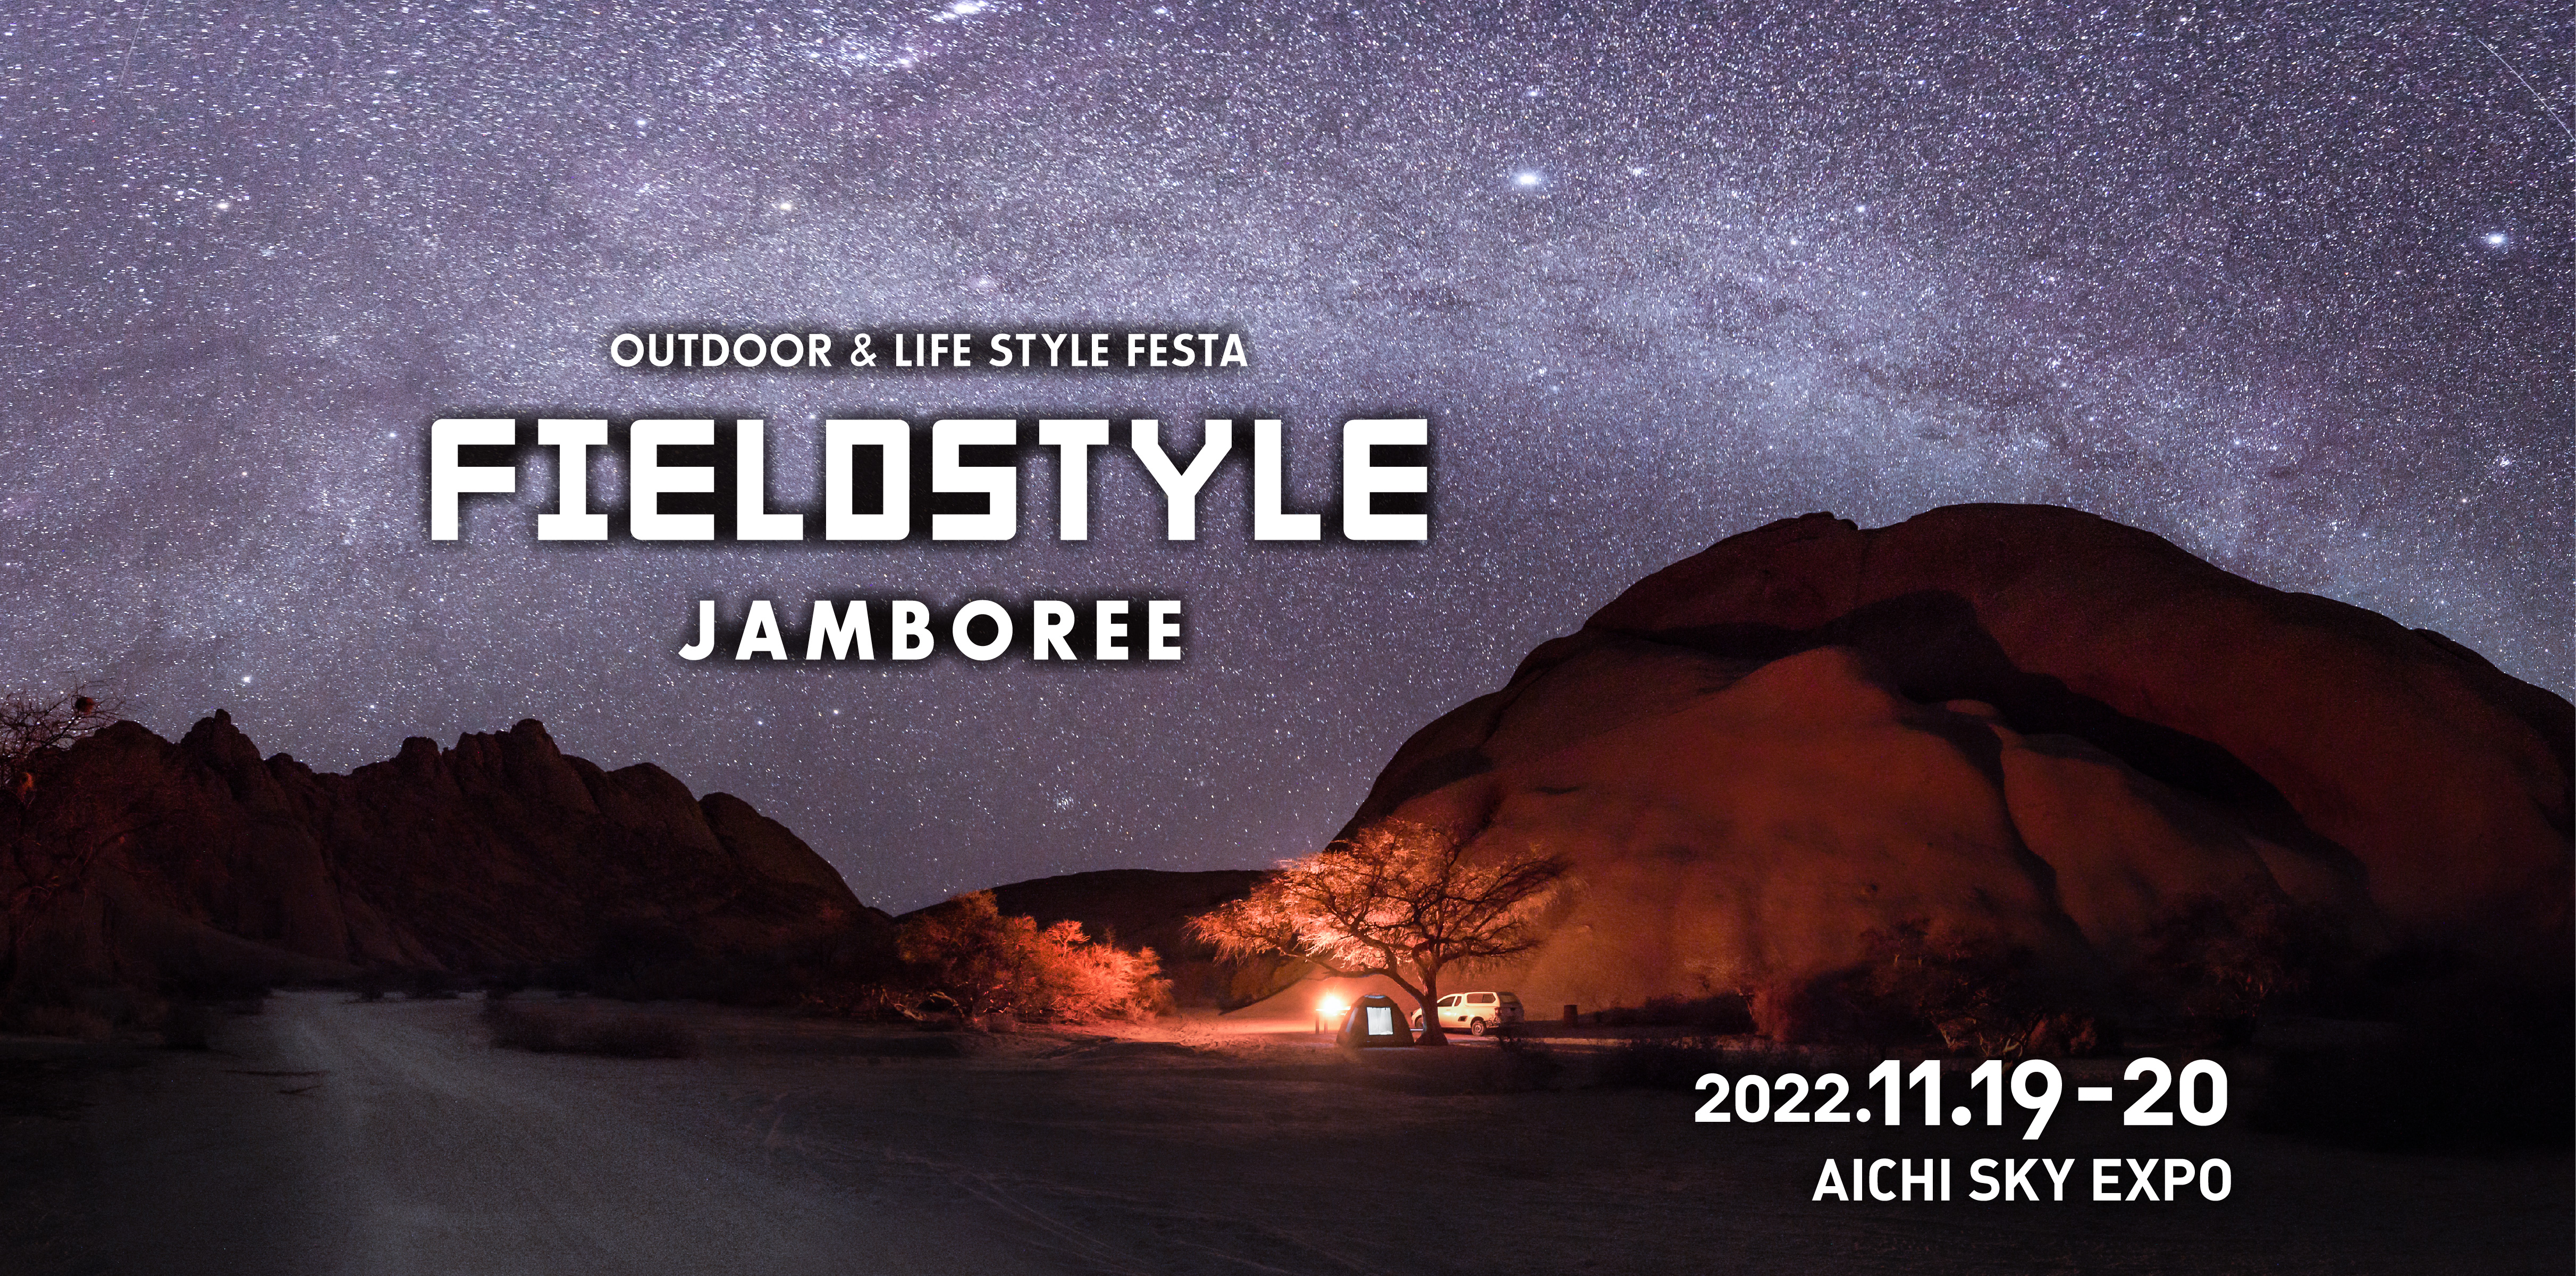 FIELDSTYLE JAMBOREE 2022